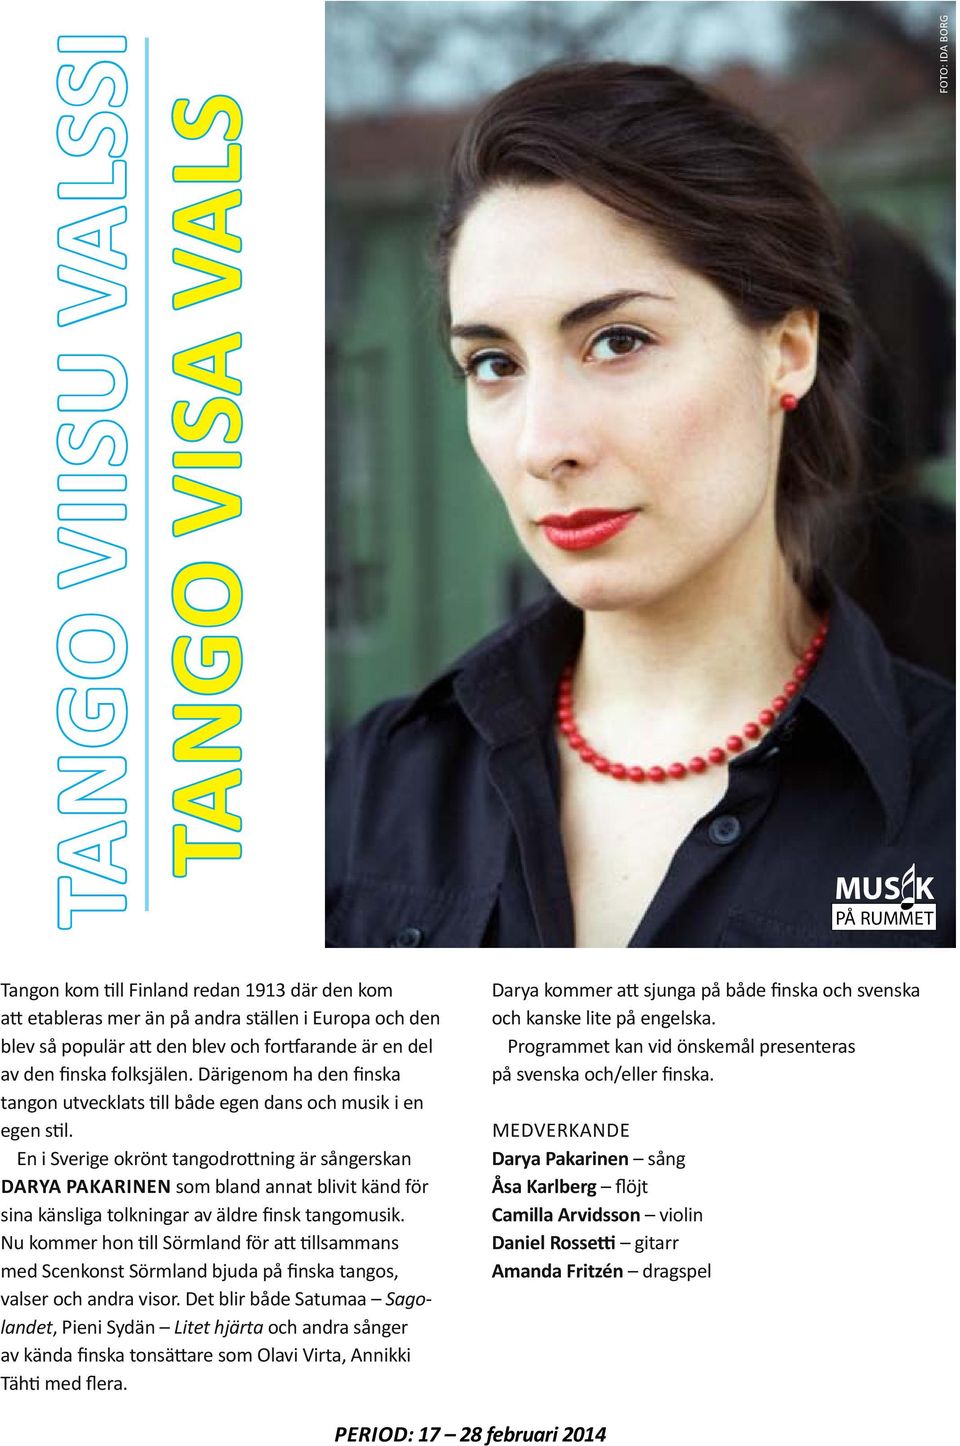 En i Sverige okrönt tangodrottning är sångerskan Darya Pakarinen som bland annat blivit känd för sina känsliga tolkningar av äldre finsk tangomusik.